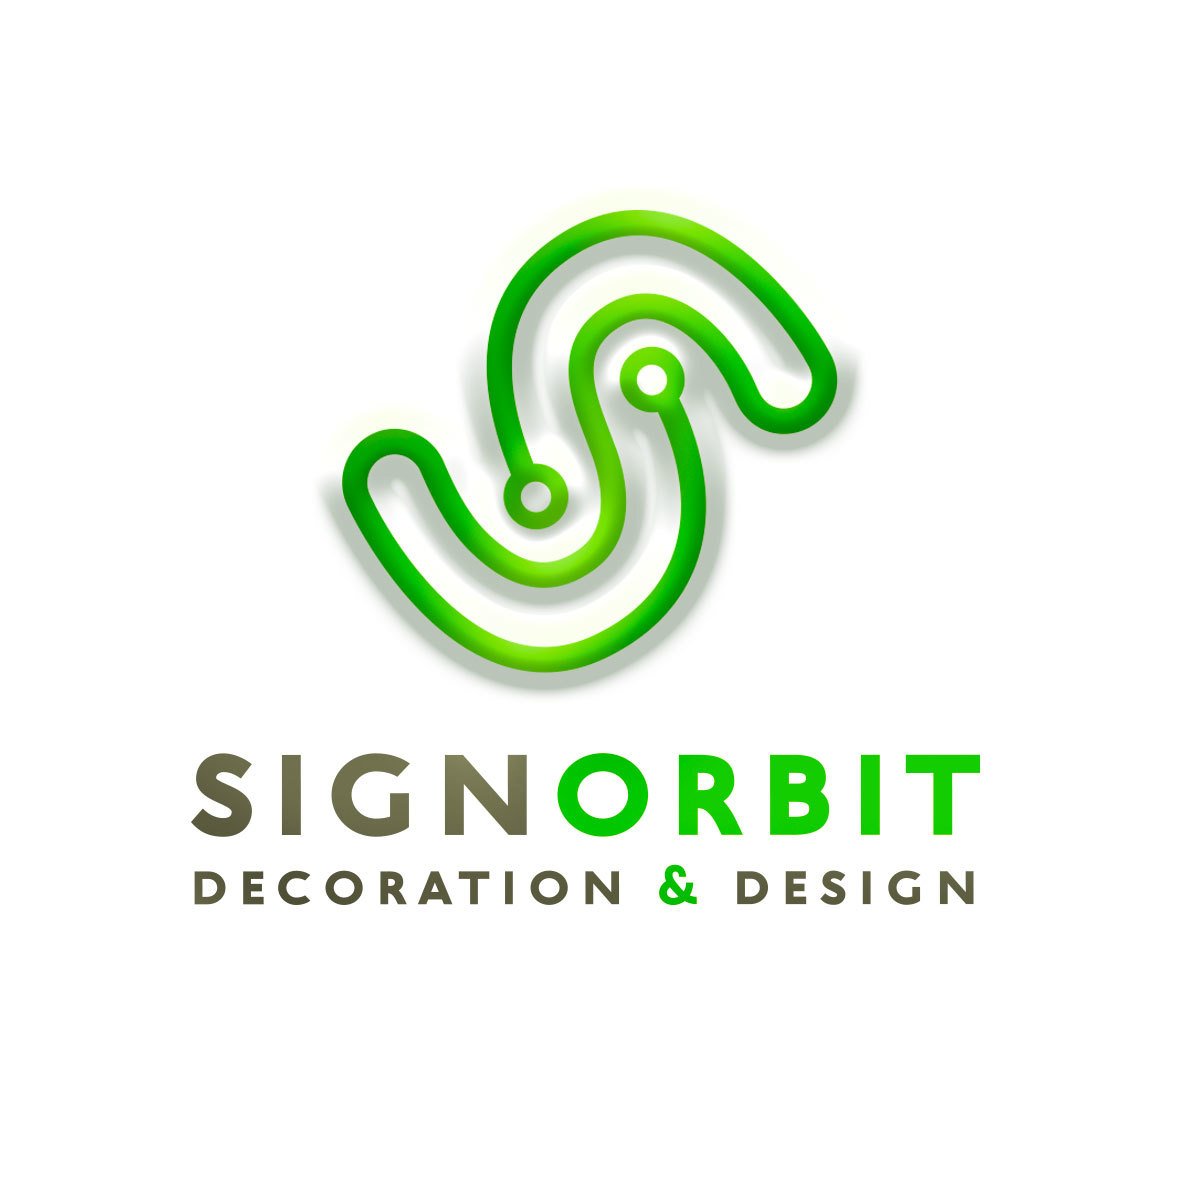 Signorbit Decoration & Design - 2016